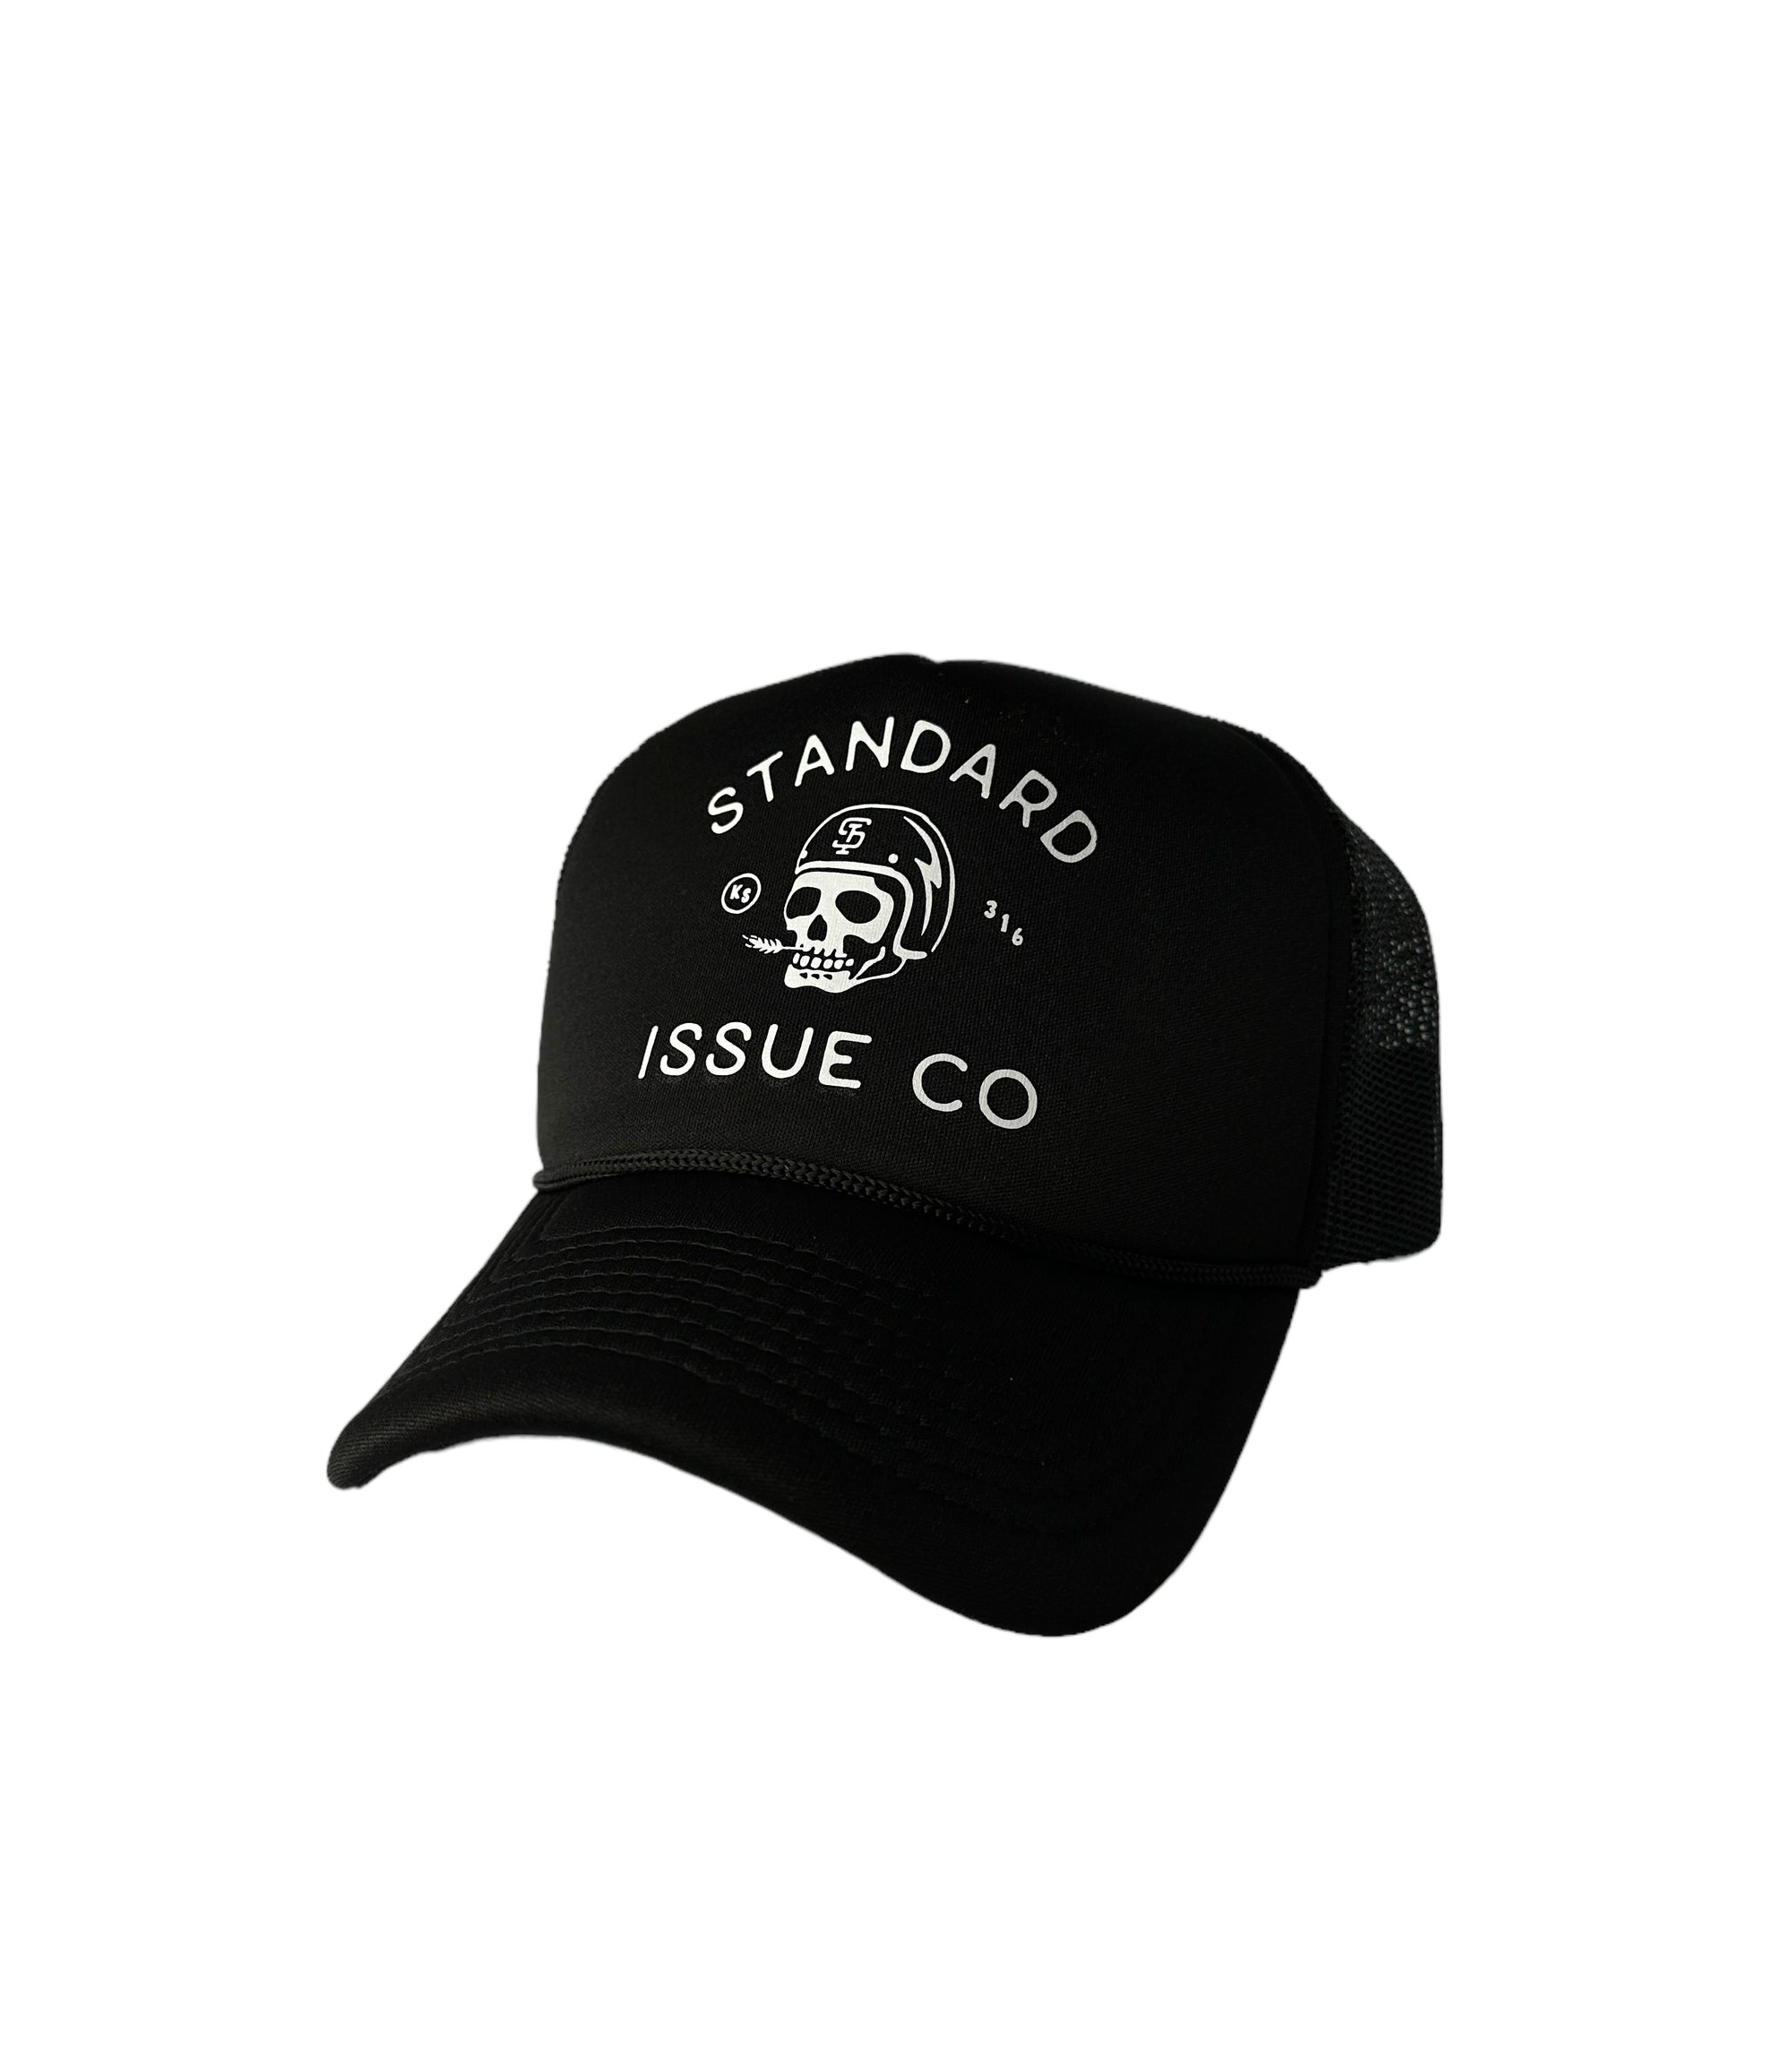 Standard Issue Co.- Fast Eddy Trucker Hat